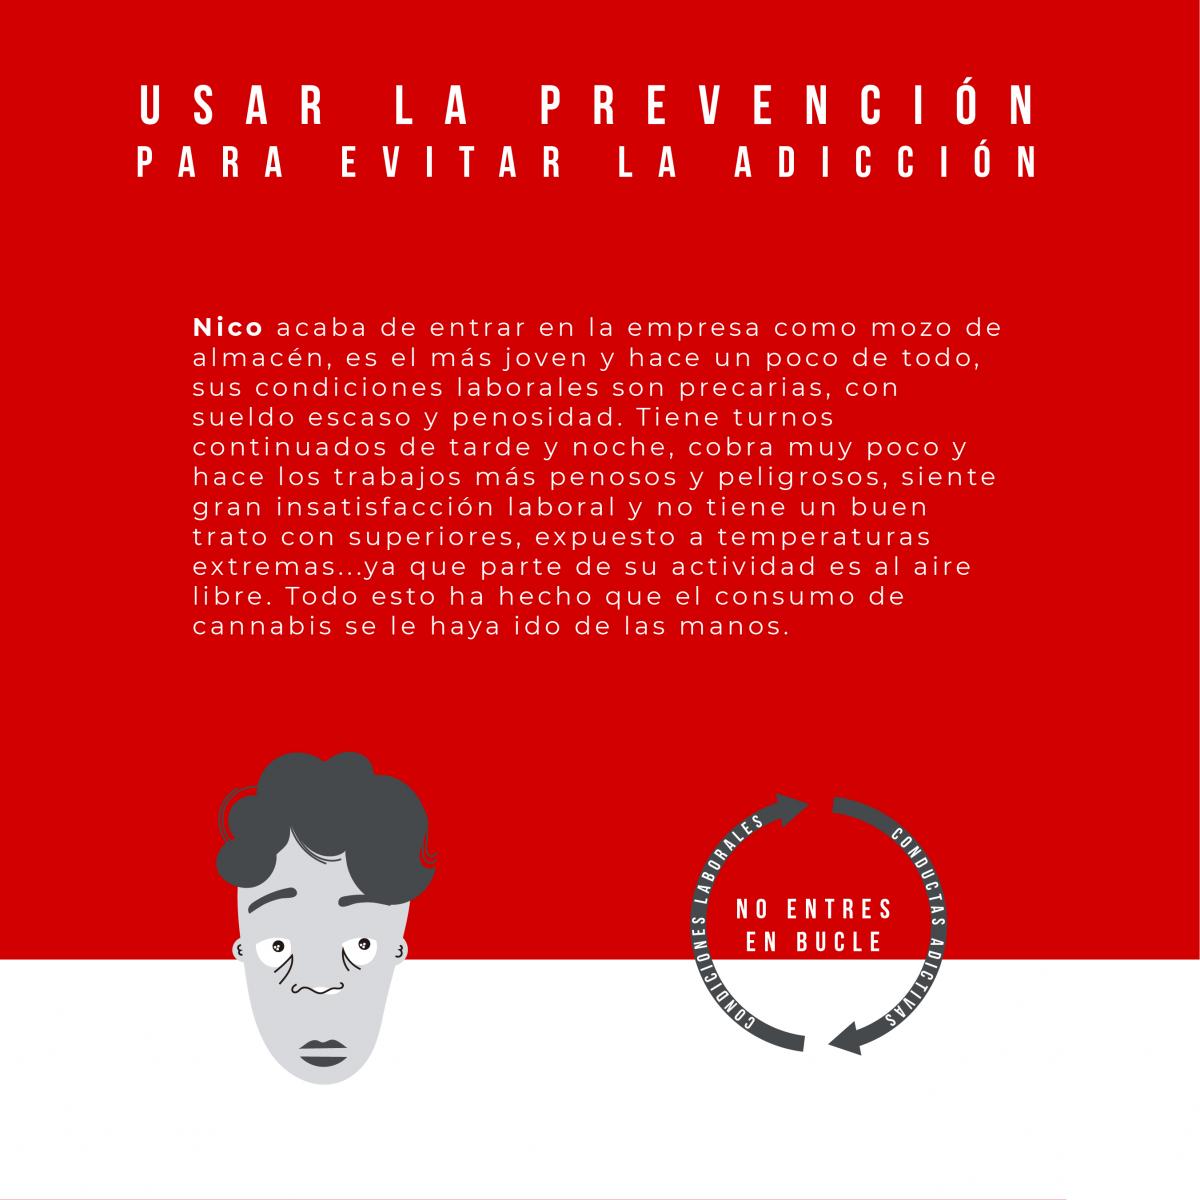 Campaña "Usar la prevención para evitar la adicción" Cocaína Facebook 3